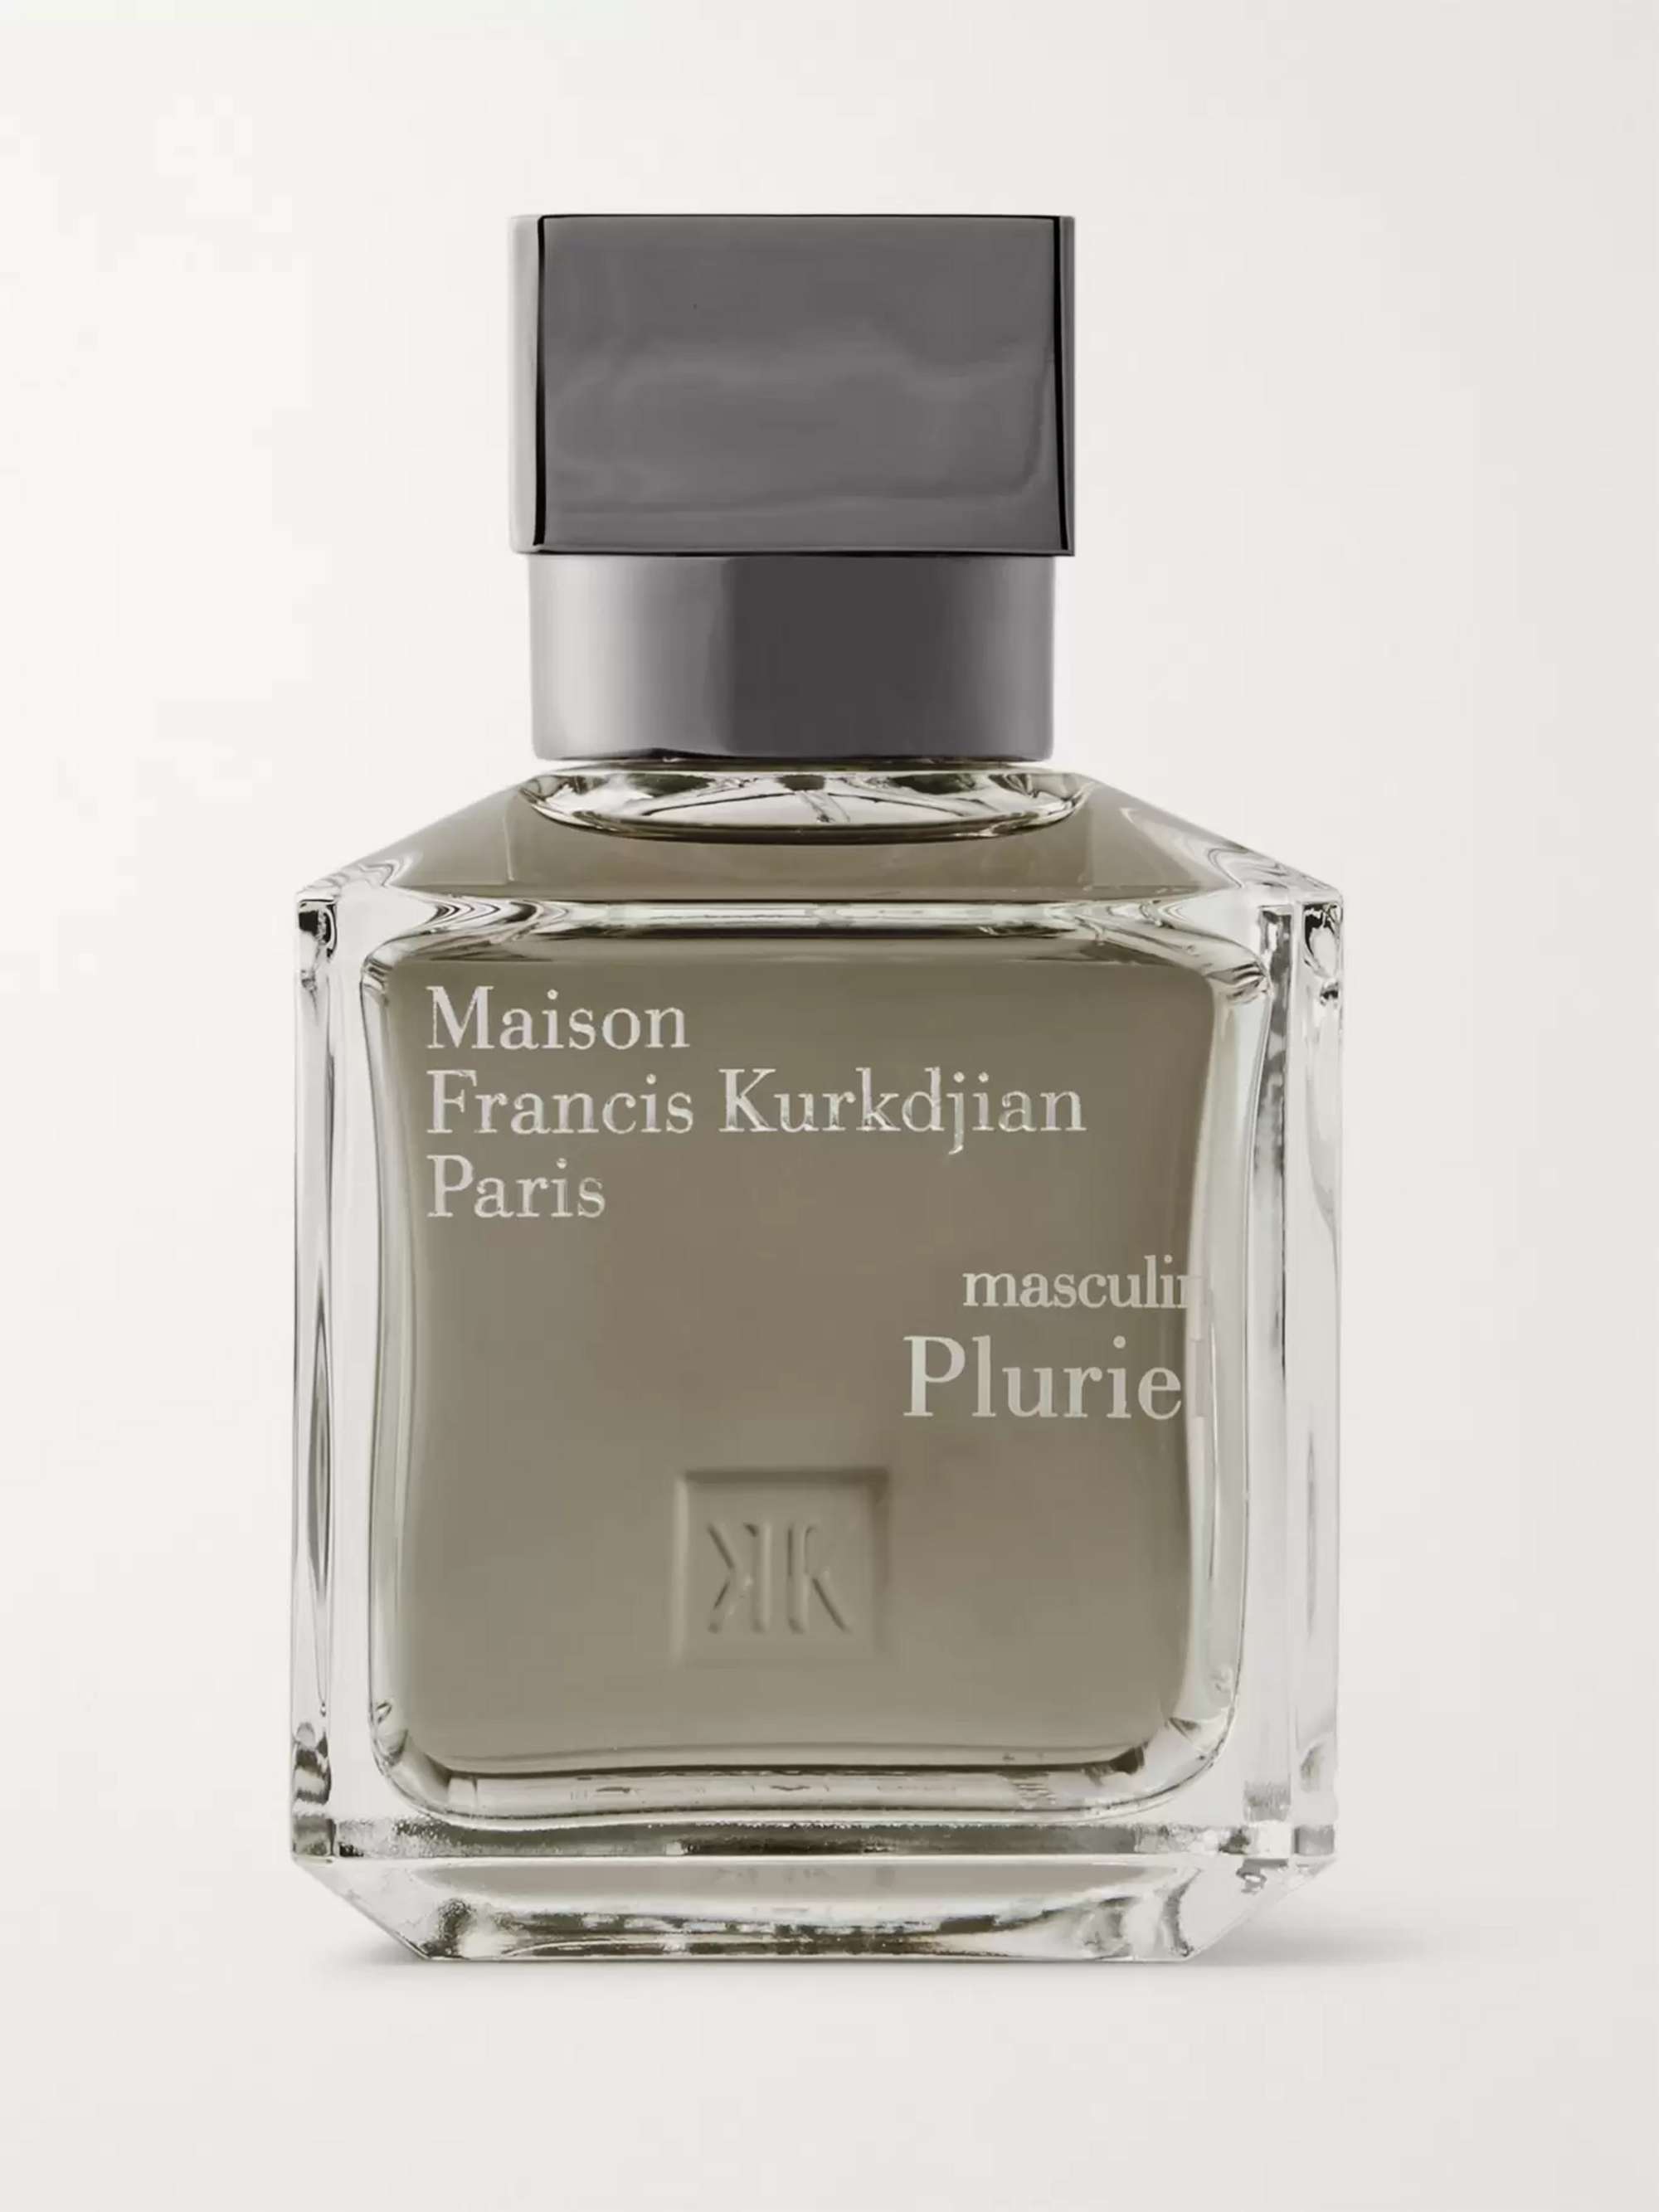 MAISON FRANCIS KURKDJIAN Masculin Pluriel Eau de Toilette - Lavender Absolute & Leather, 70ml